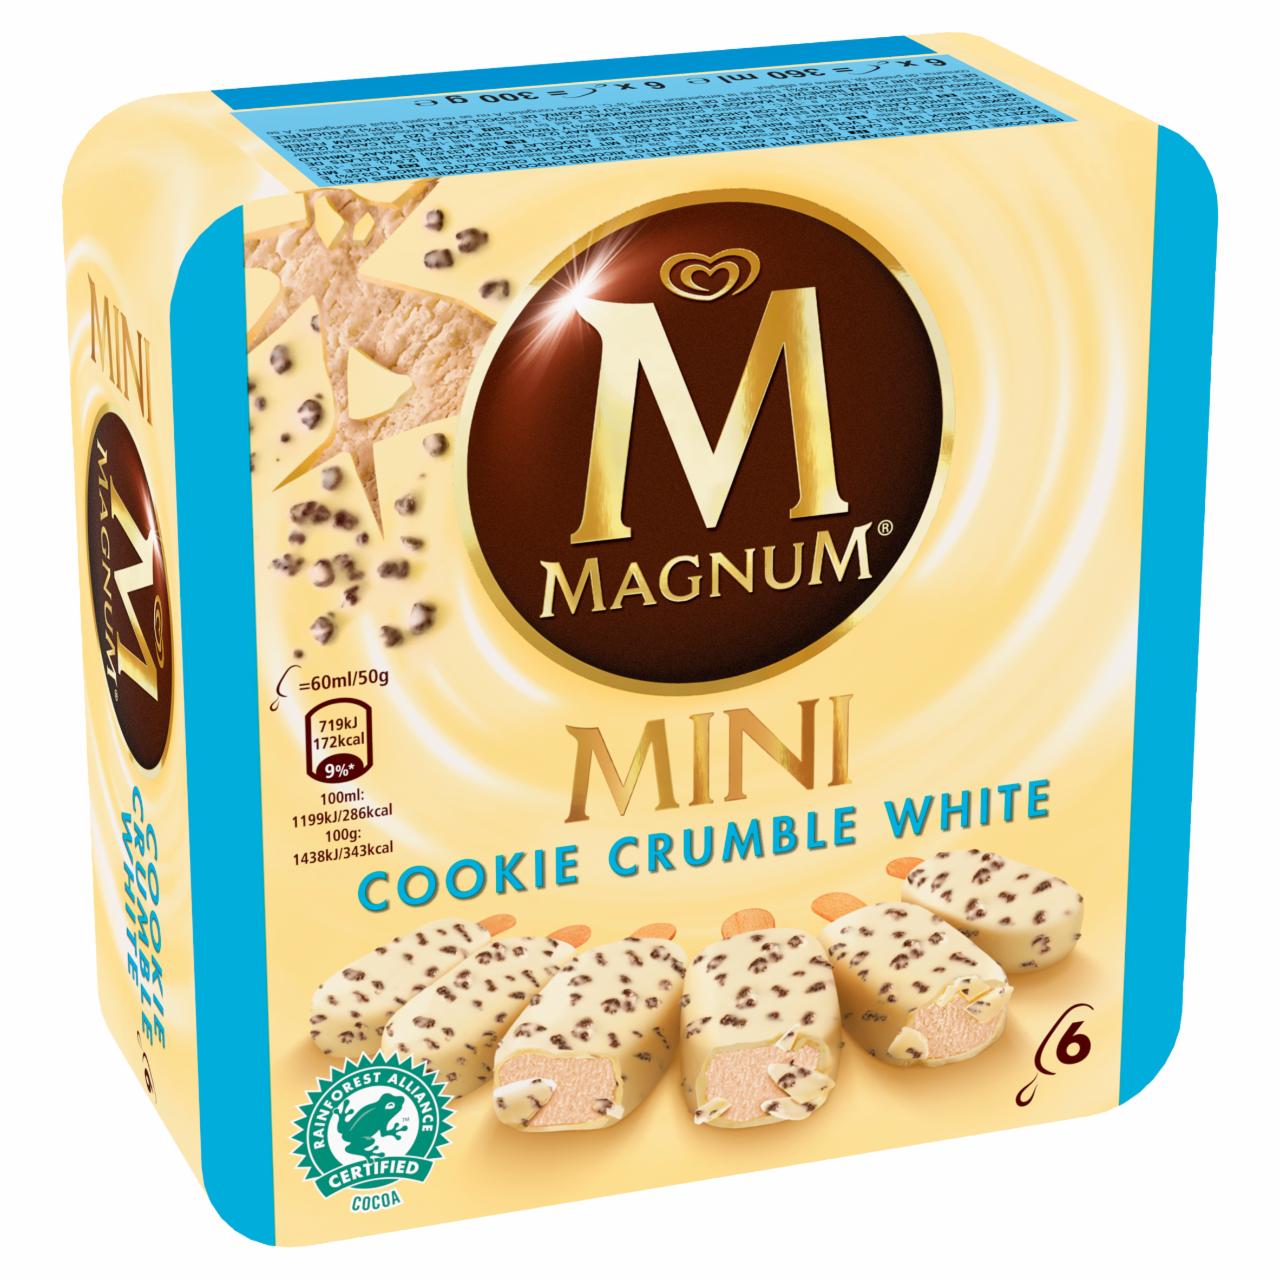 Képek - Magnum Mini keksz ízű jégkrém fehér csokoládé bevonattal és kakaós kekszdarabkákkal 6 db 360 ml